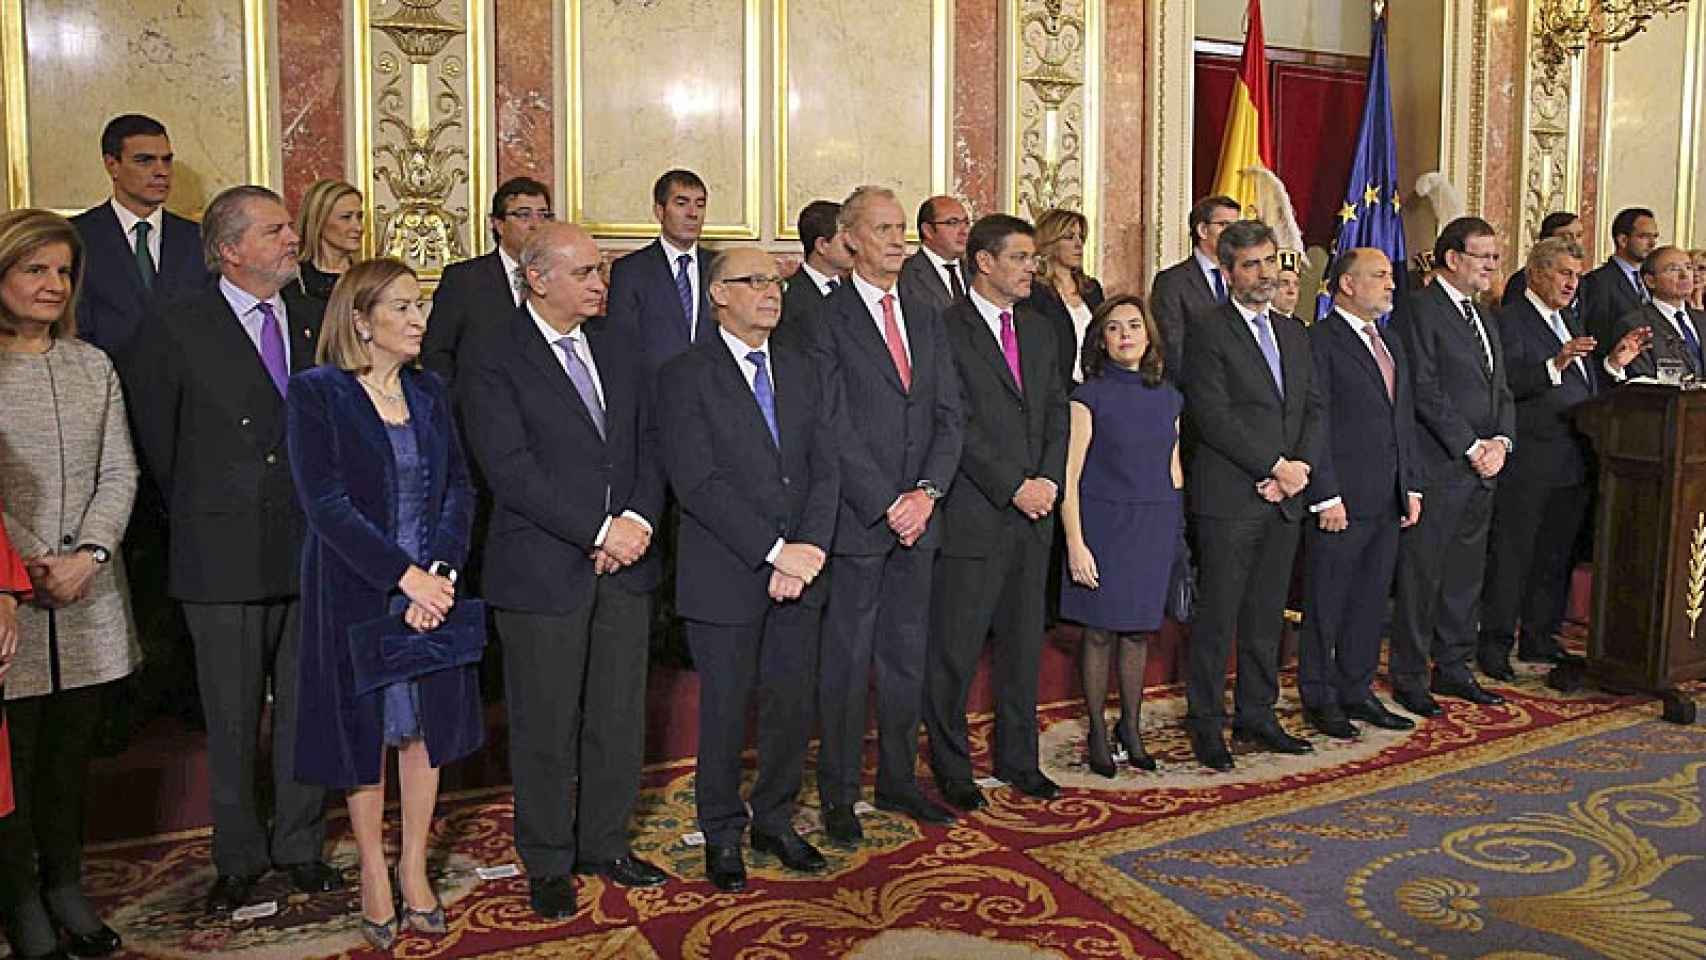 El presidente del Gobierno, Mariano Rajoy, junto a varios ministros y dirigentes políticos e institucionales, durante la celebración del Día de la Constitución en el Congreso